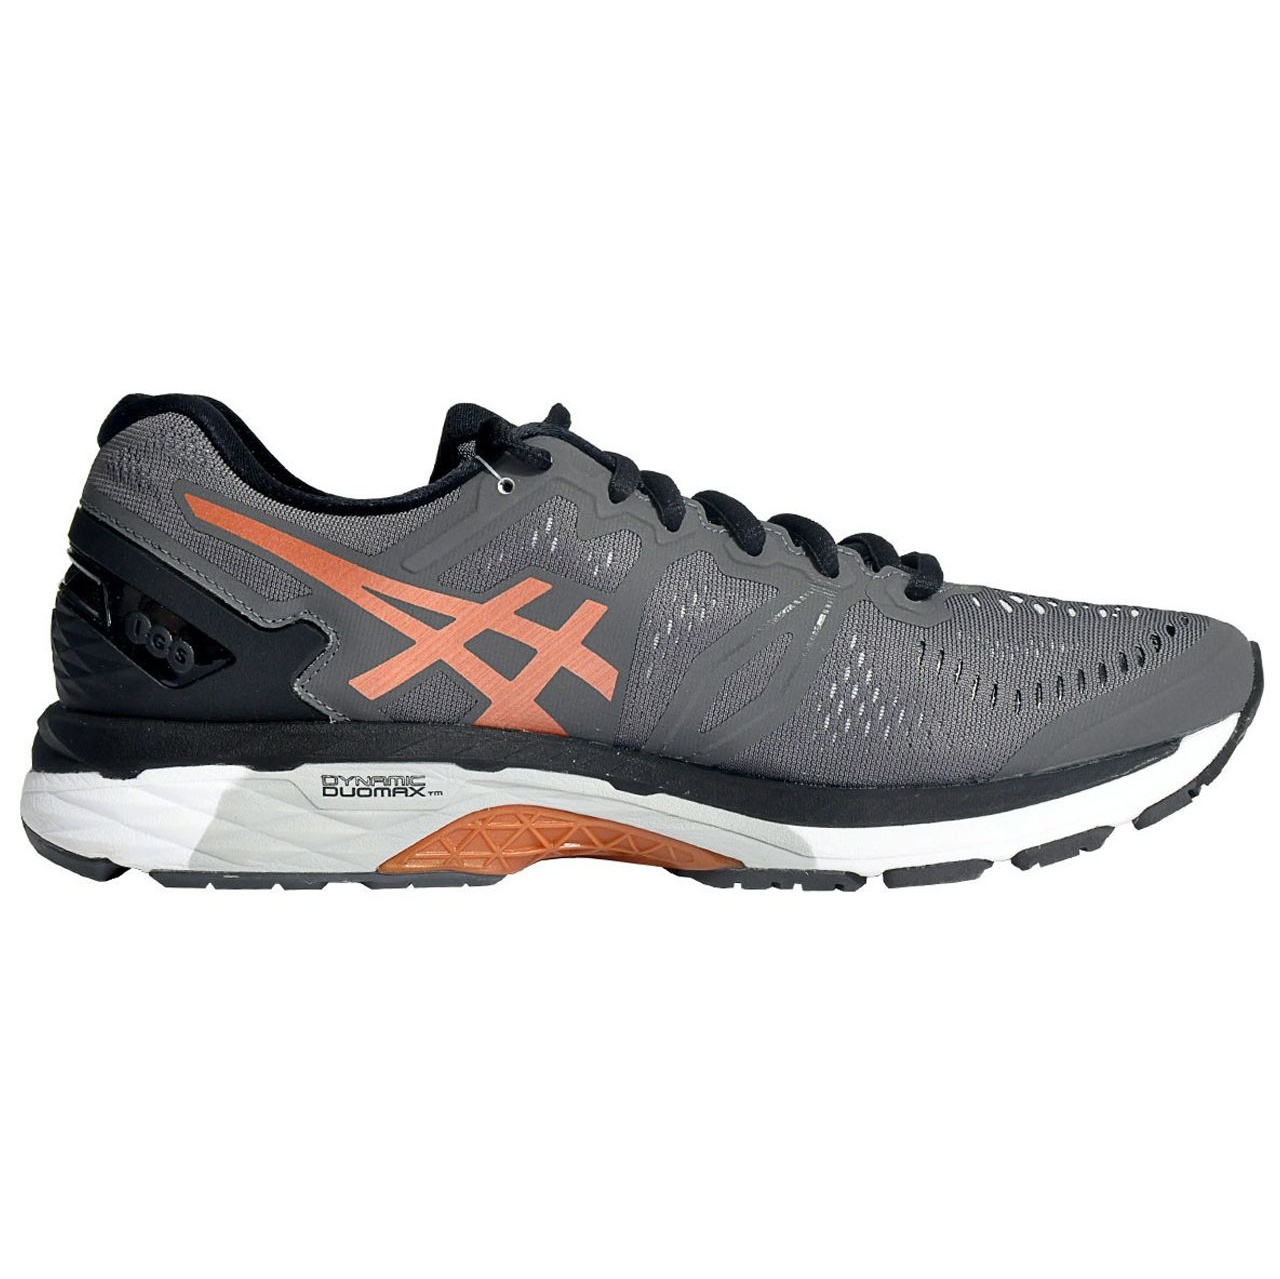  کفش مخصوص دویدن مردانه اسیکس مدل kayano کد 98-097696